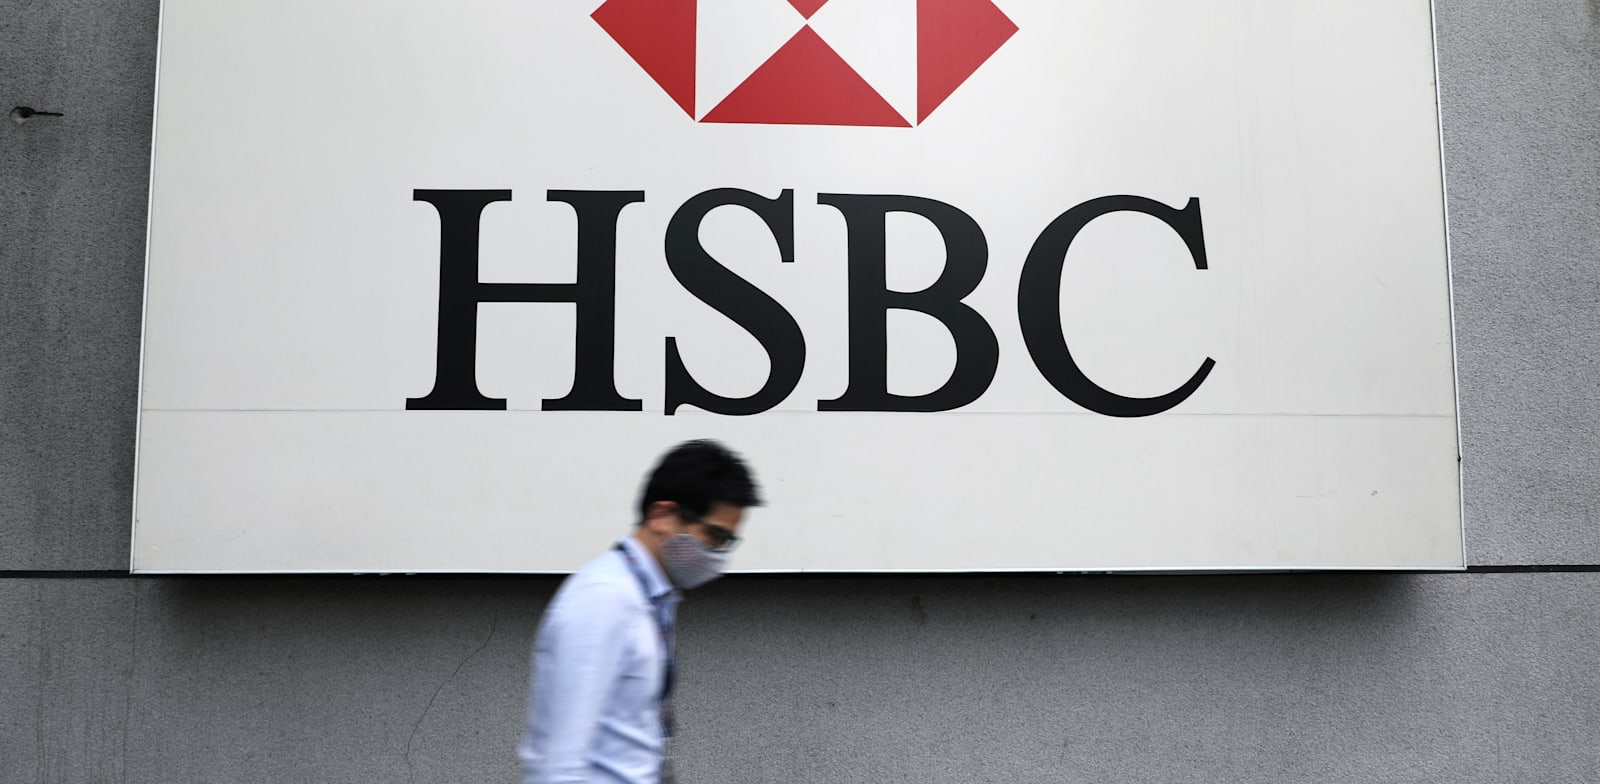 מטה בנק HSBC במלזיה / צילום: Reuters, Lim Huey Teng